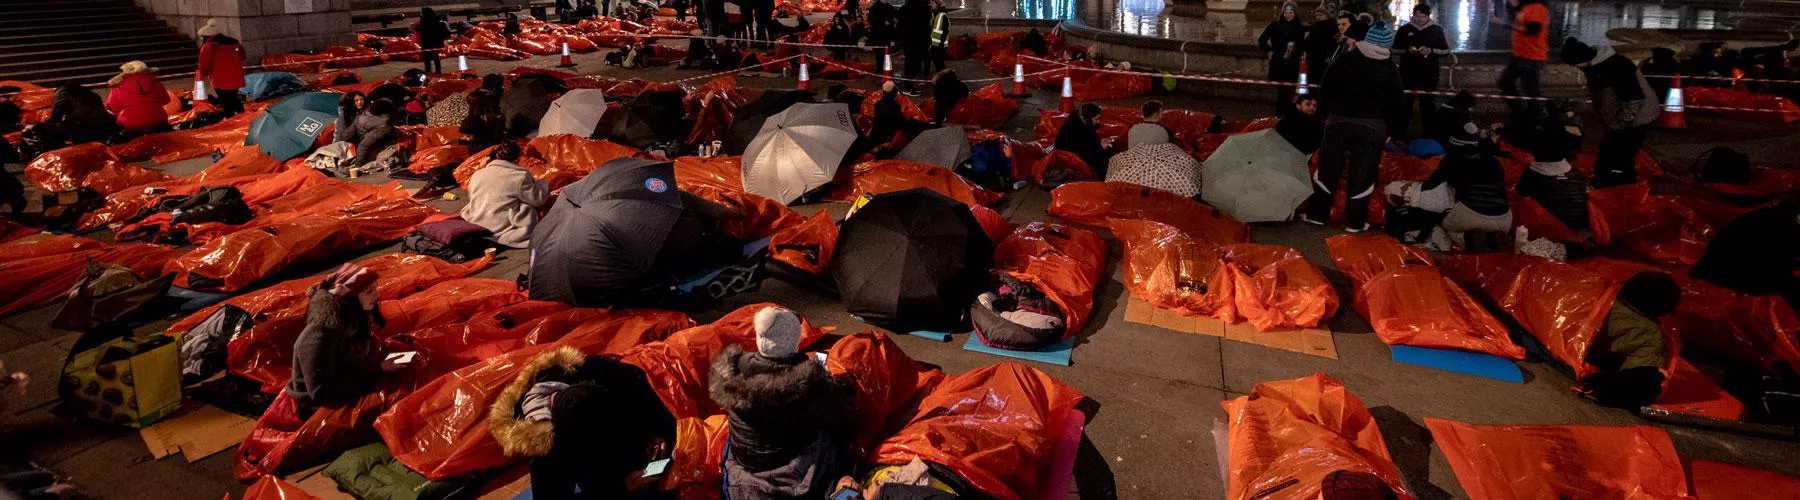 People in orange plastic sleeping bags lie out in Trafalgar Square